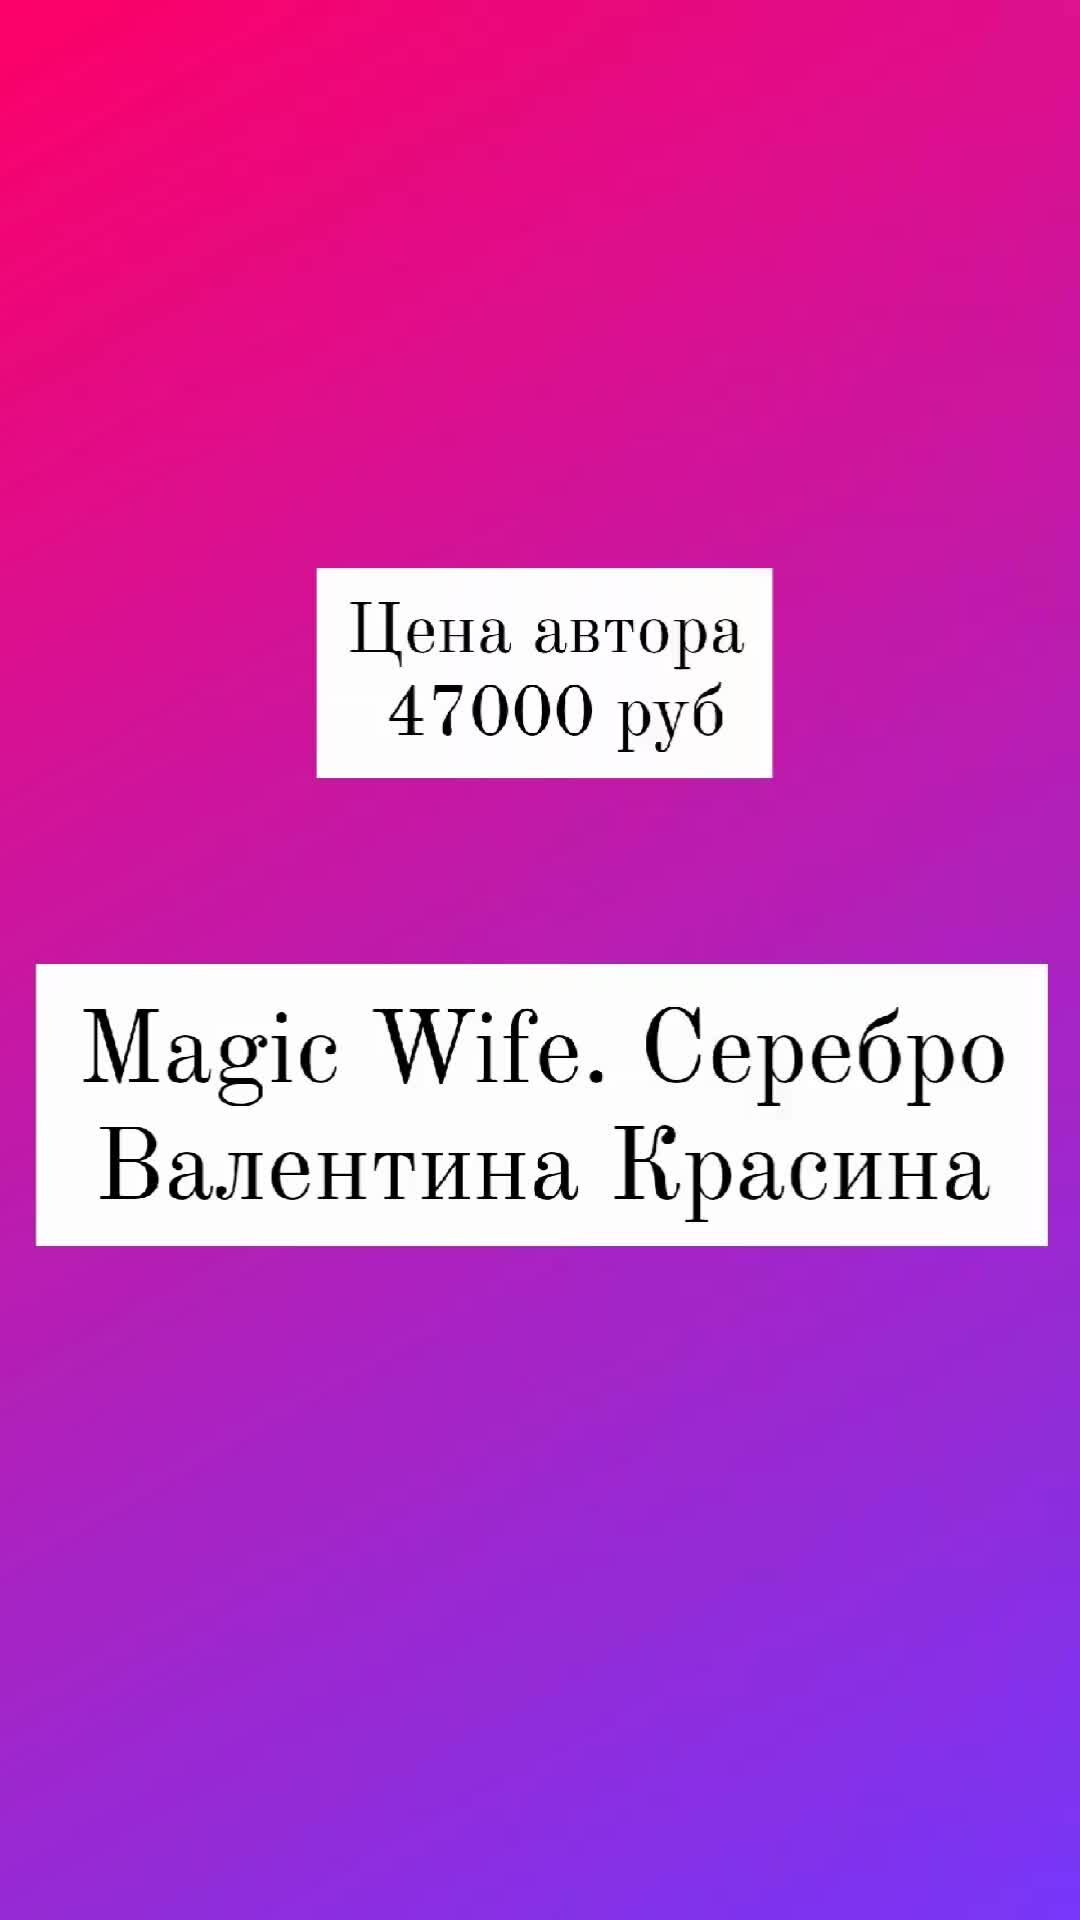 Magic wife